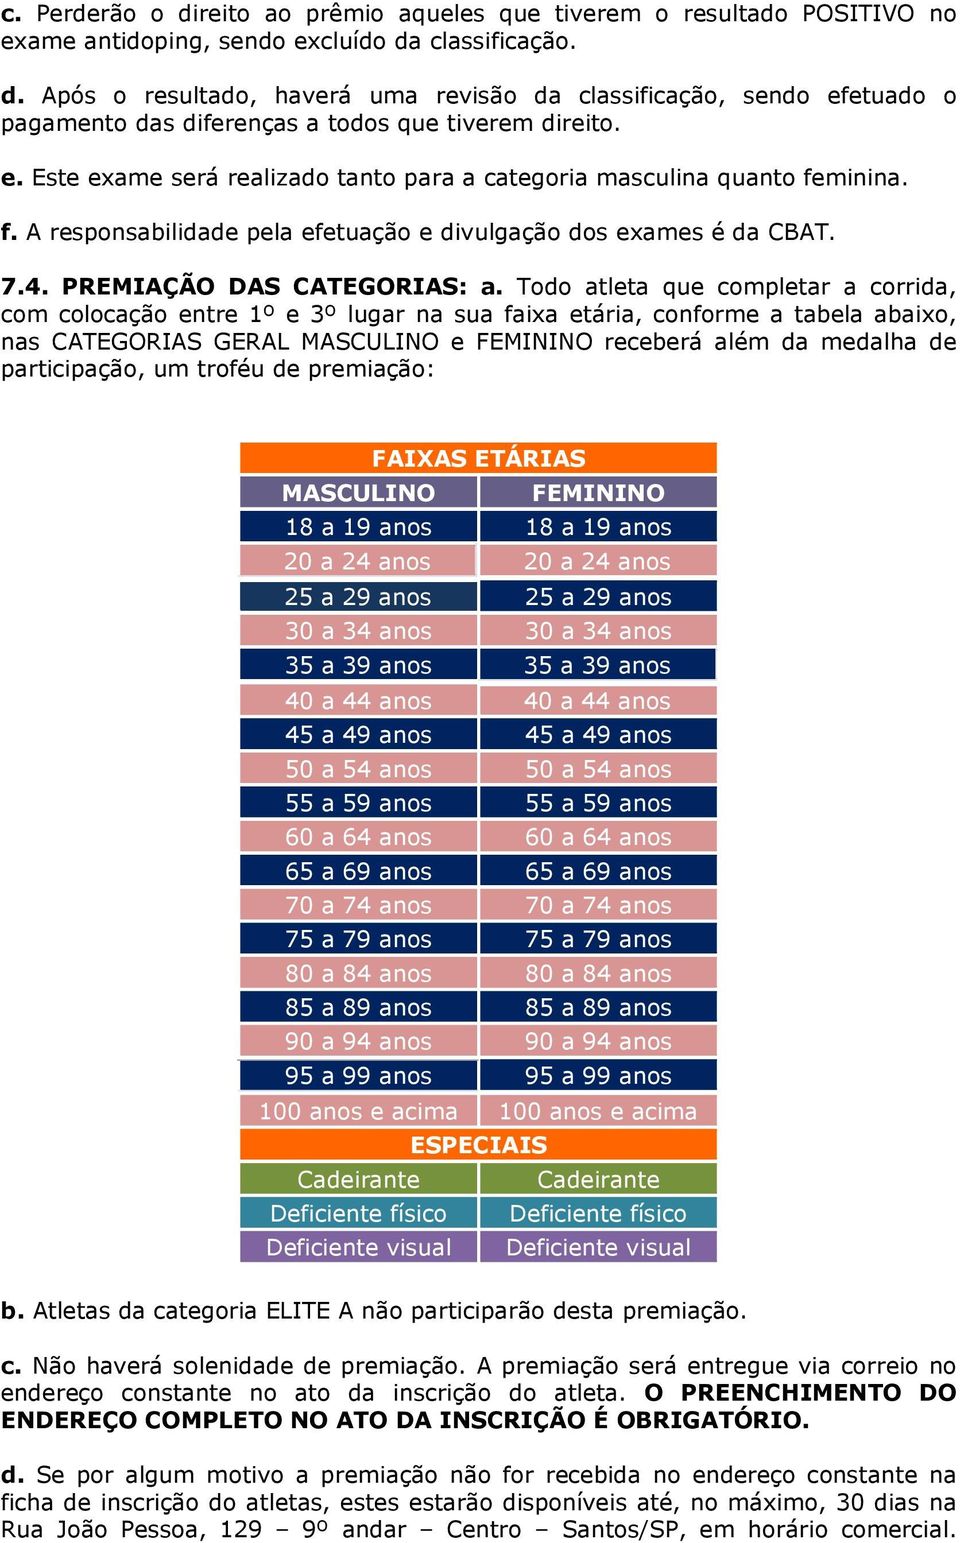 Todo atleta que completar a corrida, com colocação entre 1º e 3º lugar na sua faixa etária, conforme a tabela abaixo, nas CATEGORIAS GERAL MASCULINO e FEMININO receberá além da medalha de